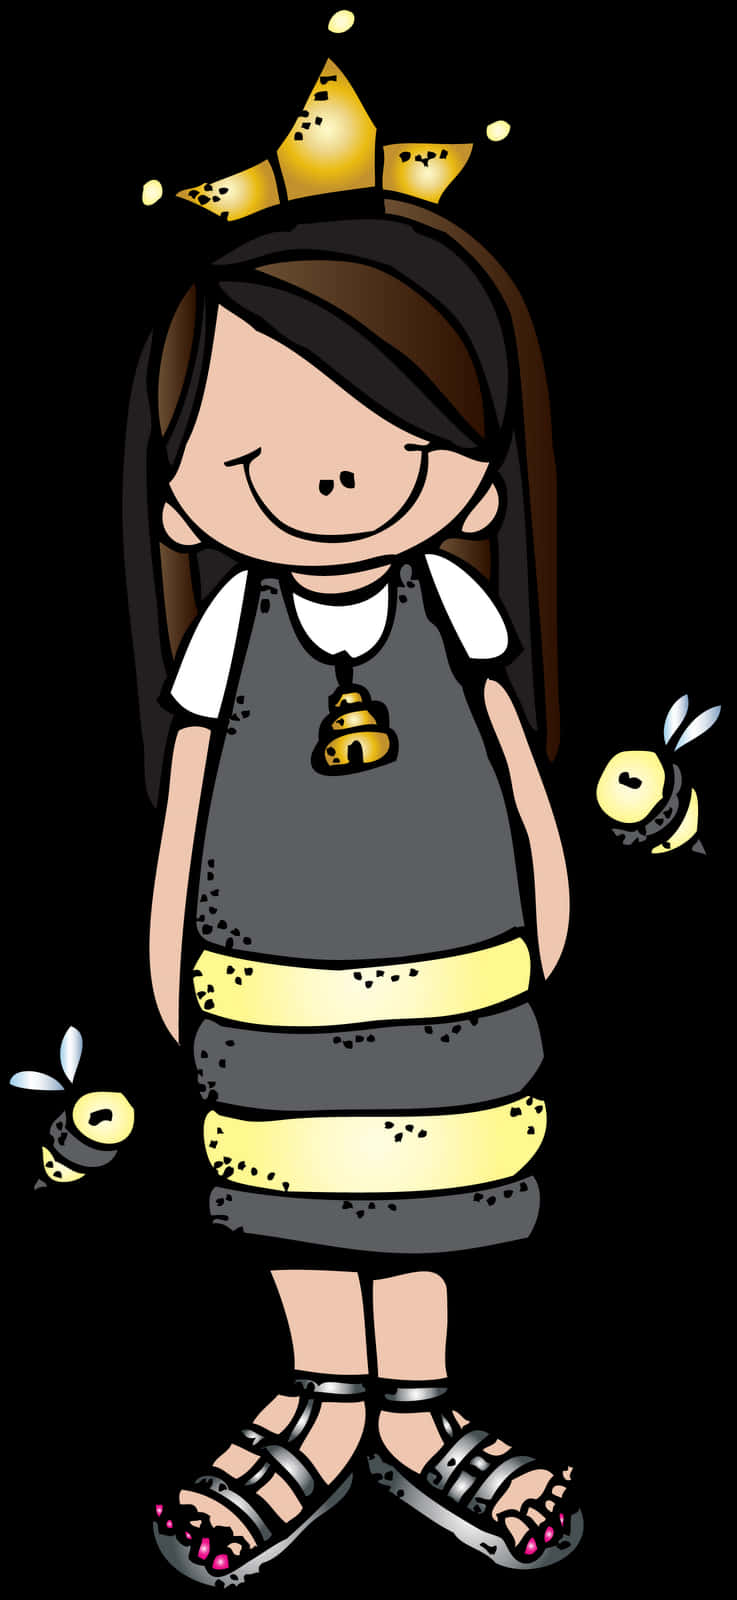 Download Queen Bee Cartoon Character | Wallpapers.com